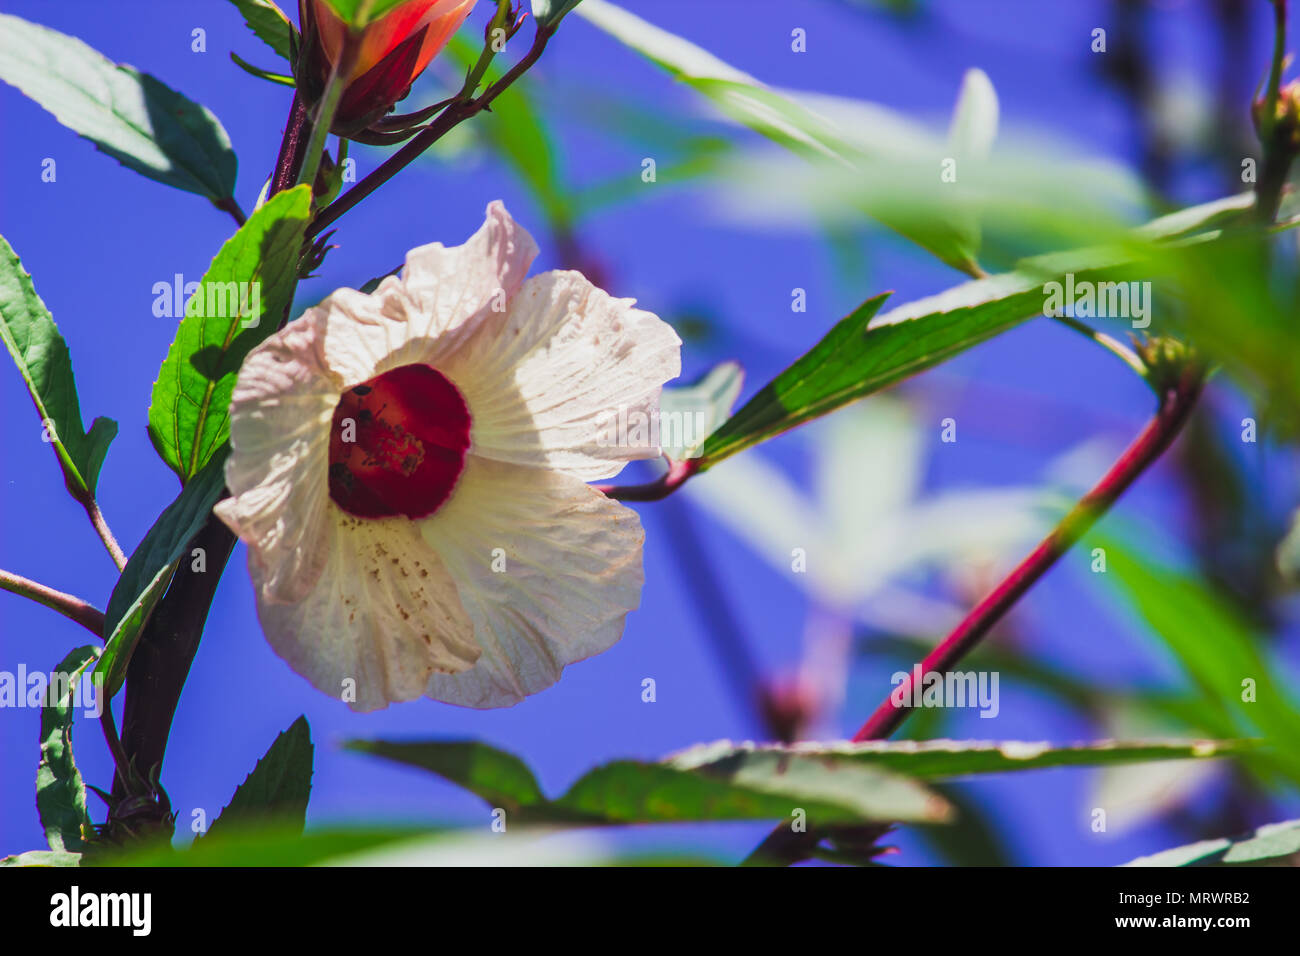 Vinagreira a flor do quiabo azedo Stock Photo